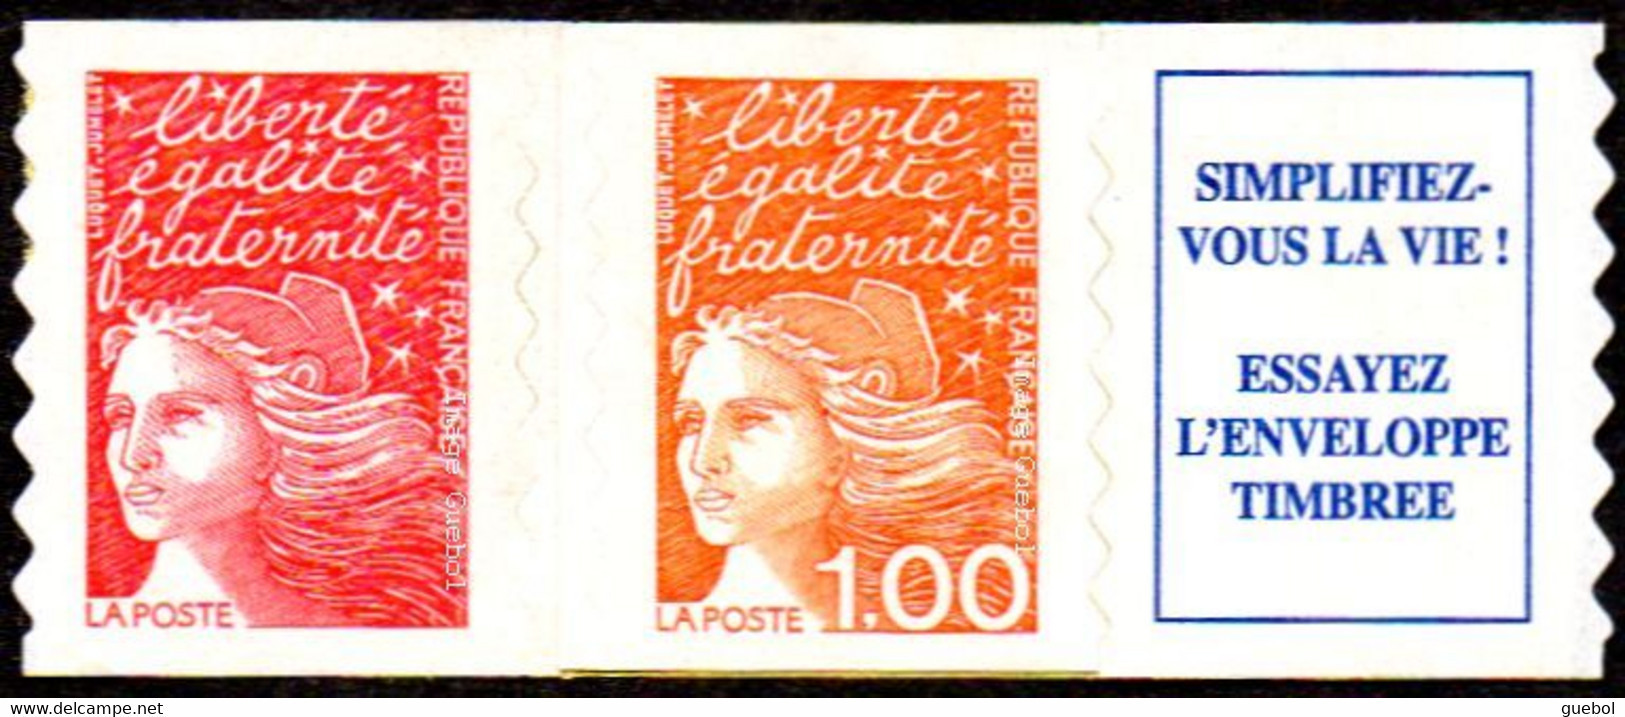 France Autoadhésif ** N°   16.b Au Modèle 3101.b - Marianne Du 14 Juillet De Luquet, Les Tvp + 1f00 Orange + Vignette - Unused Stamps